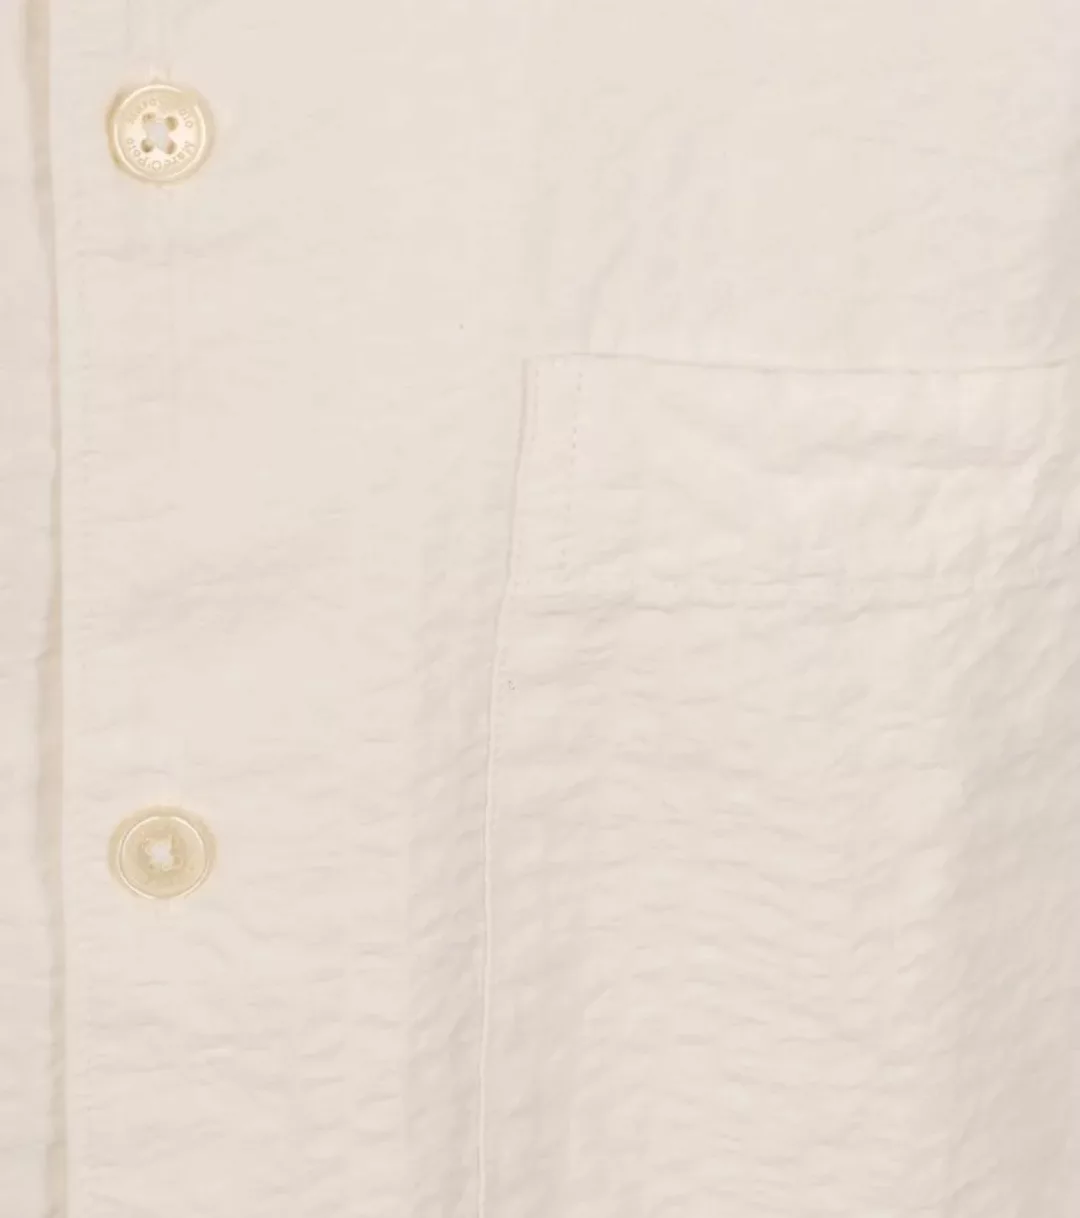 Marc O'Polo Hemd Short Sleeves Seersucker Off White - Größe XXL günstig online kaufen